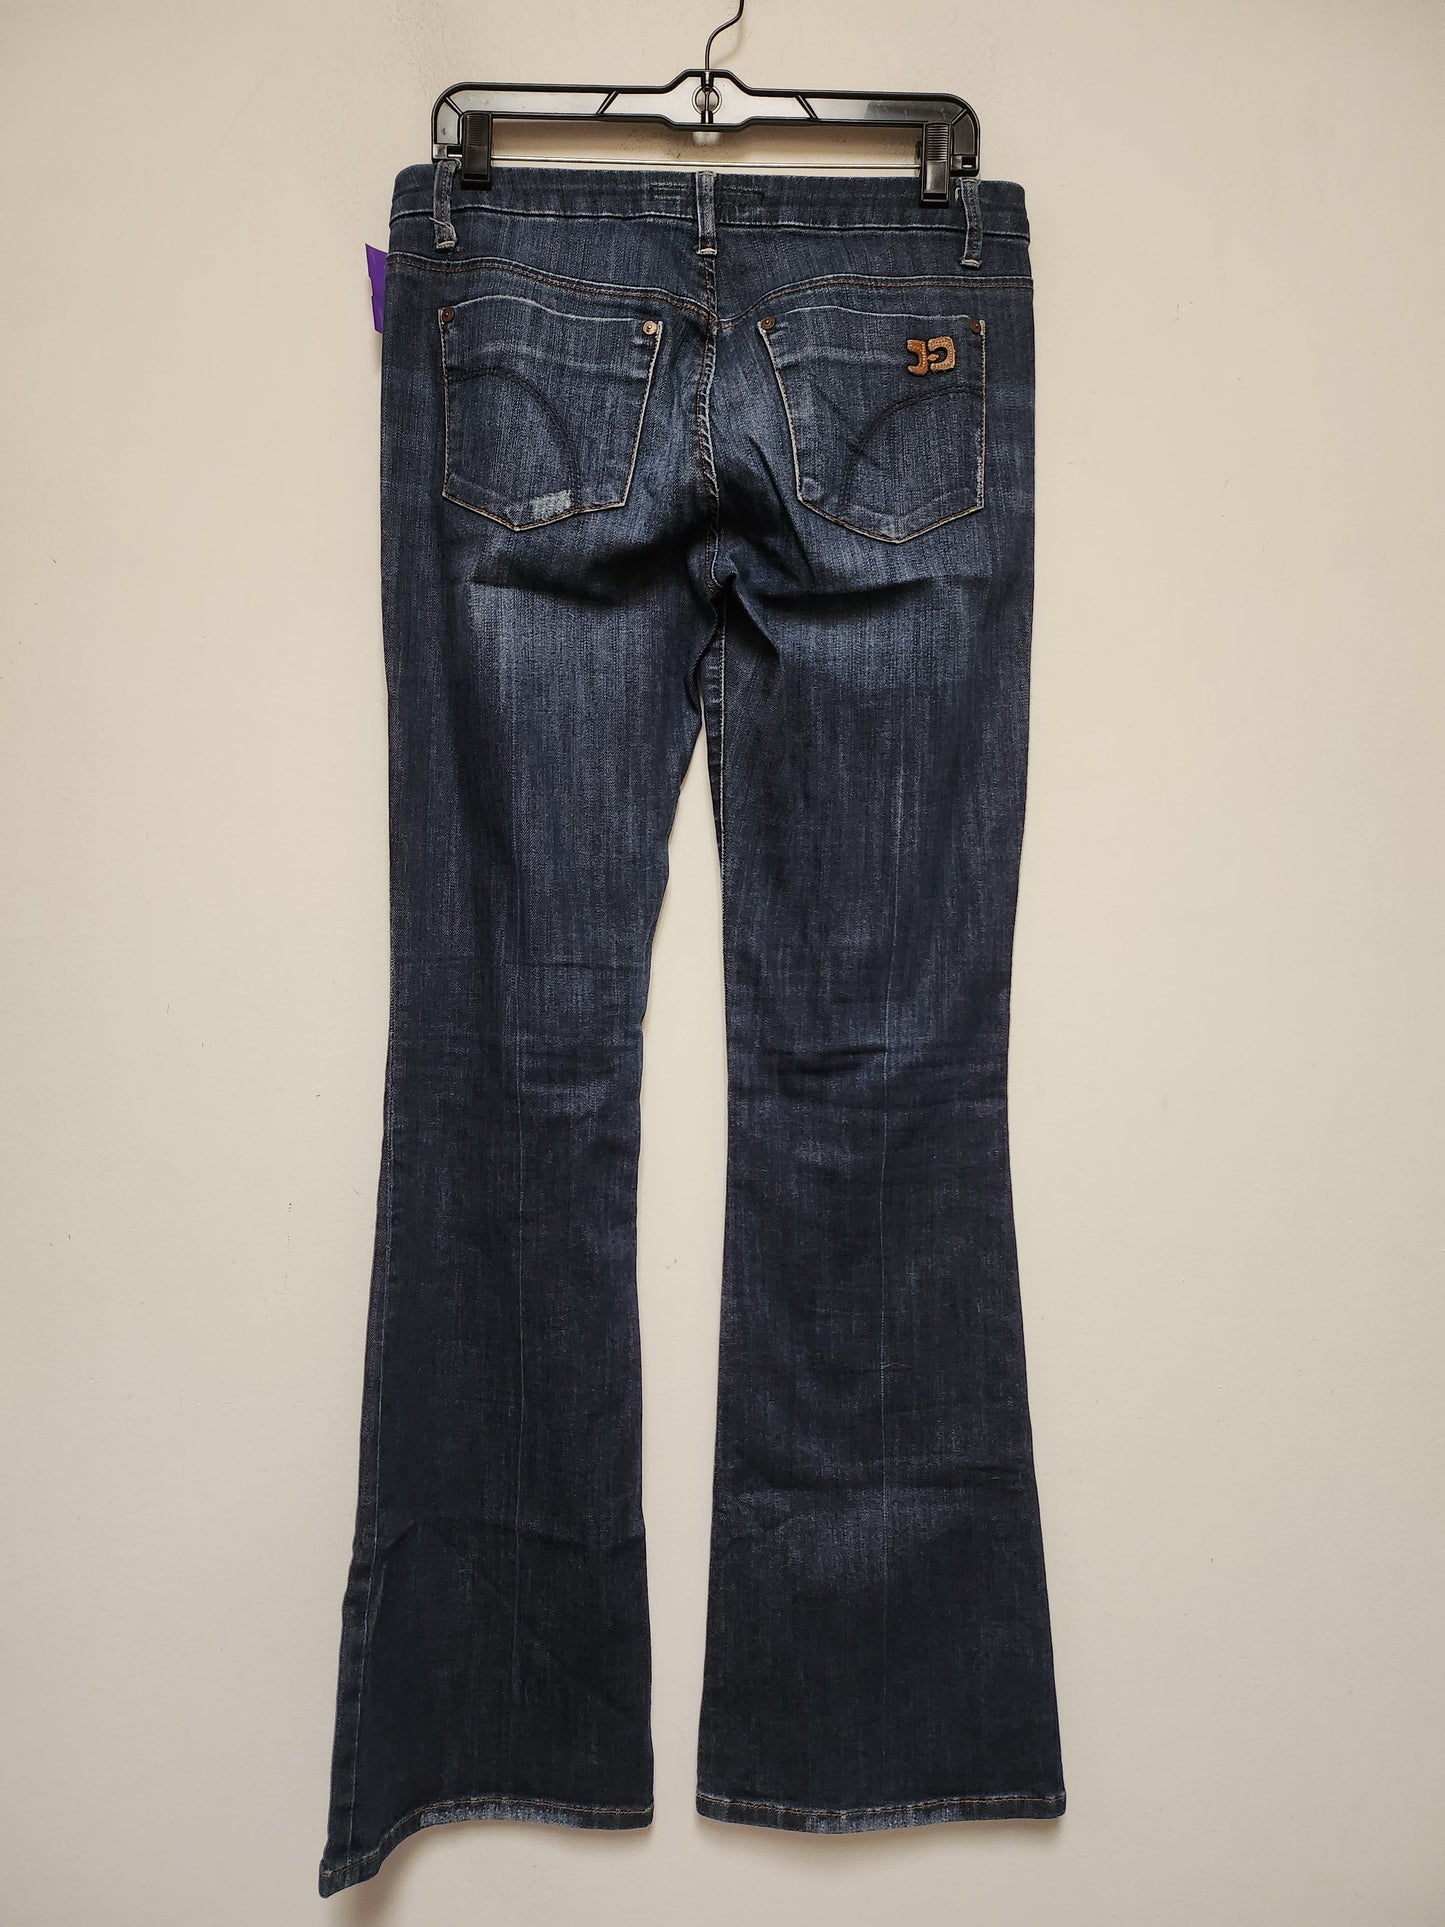 Blue Denim Jeans Boot Cut Joes Jeans, Size 6